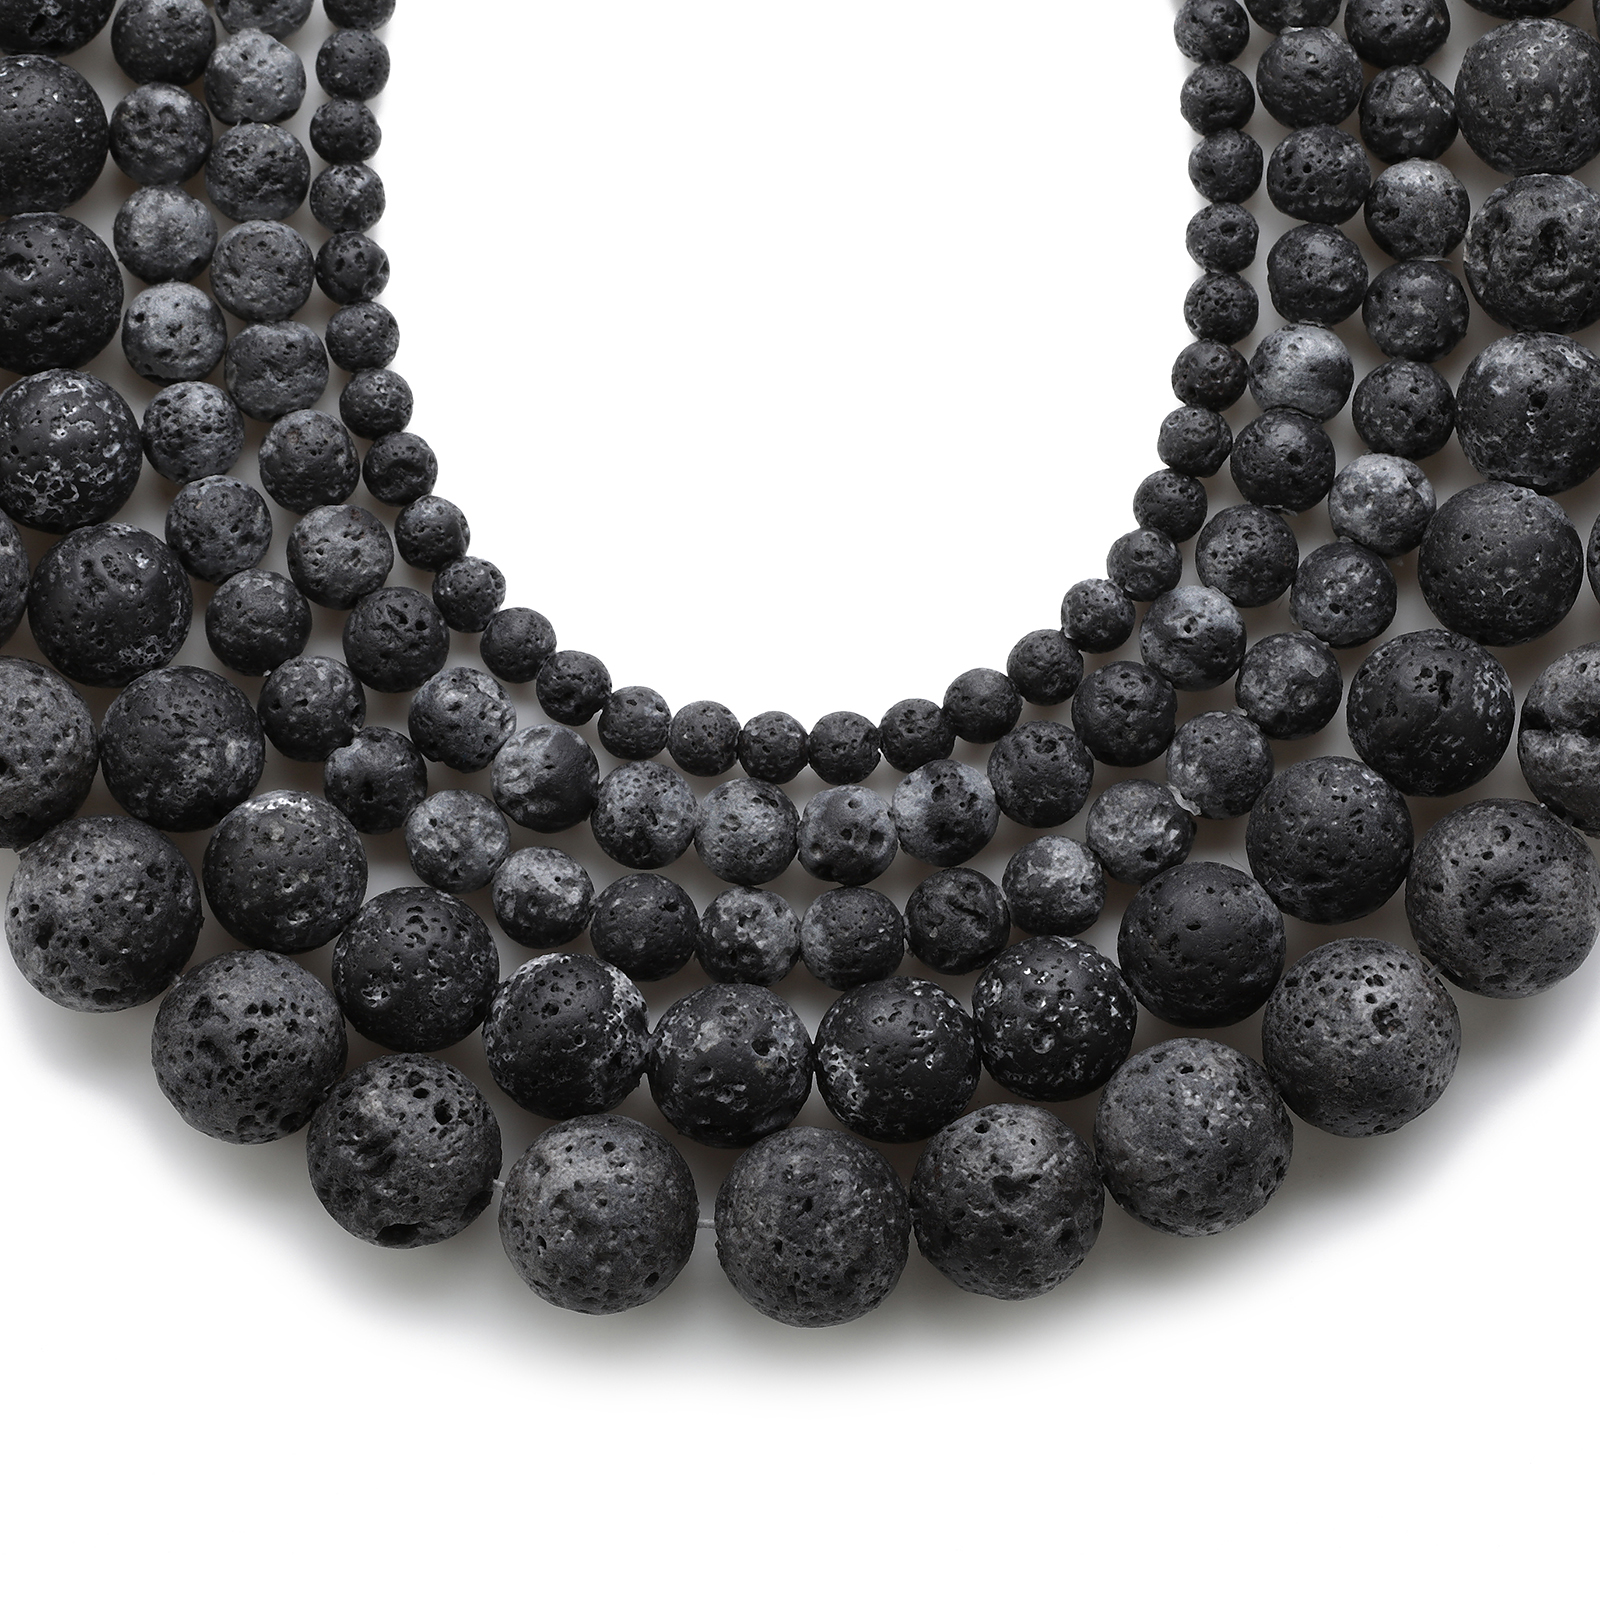 4-12 毫米黑色火山熔岩寶石珠圓形散珠能量石水晶珠用於珠寶製作 DIY 手鍊項鍊